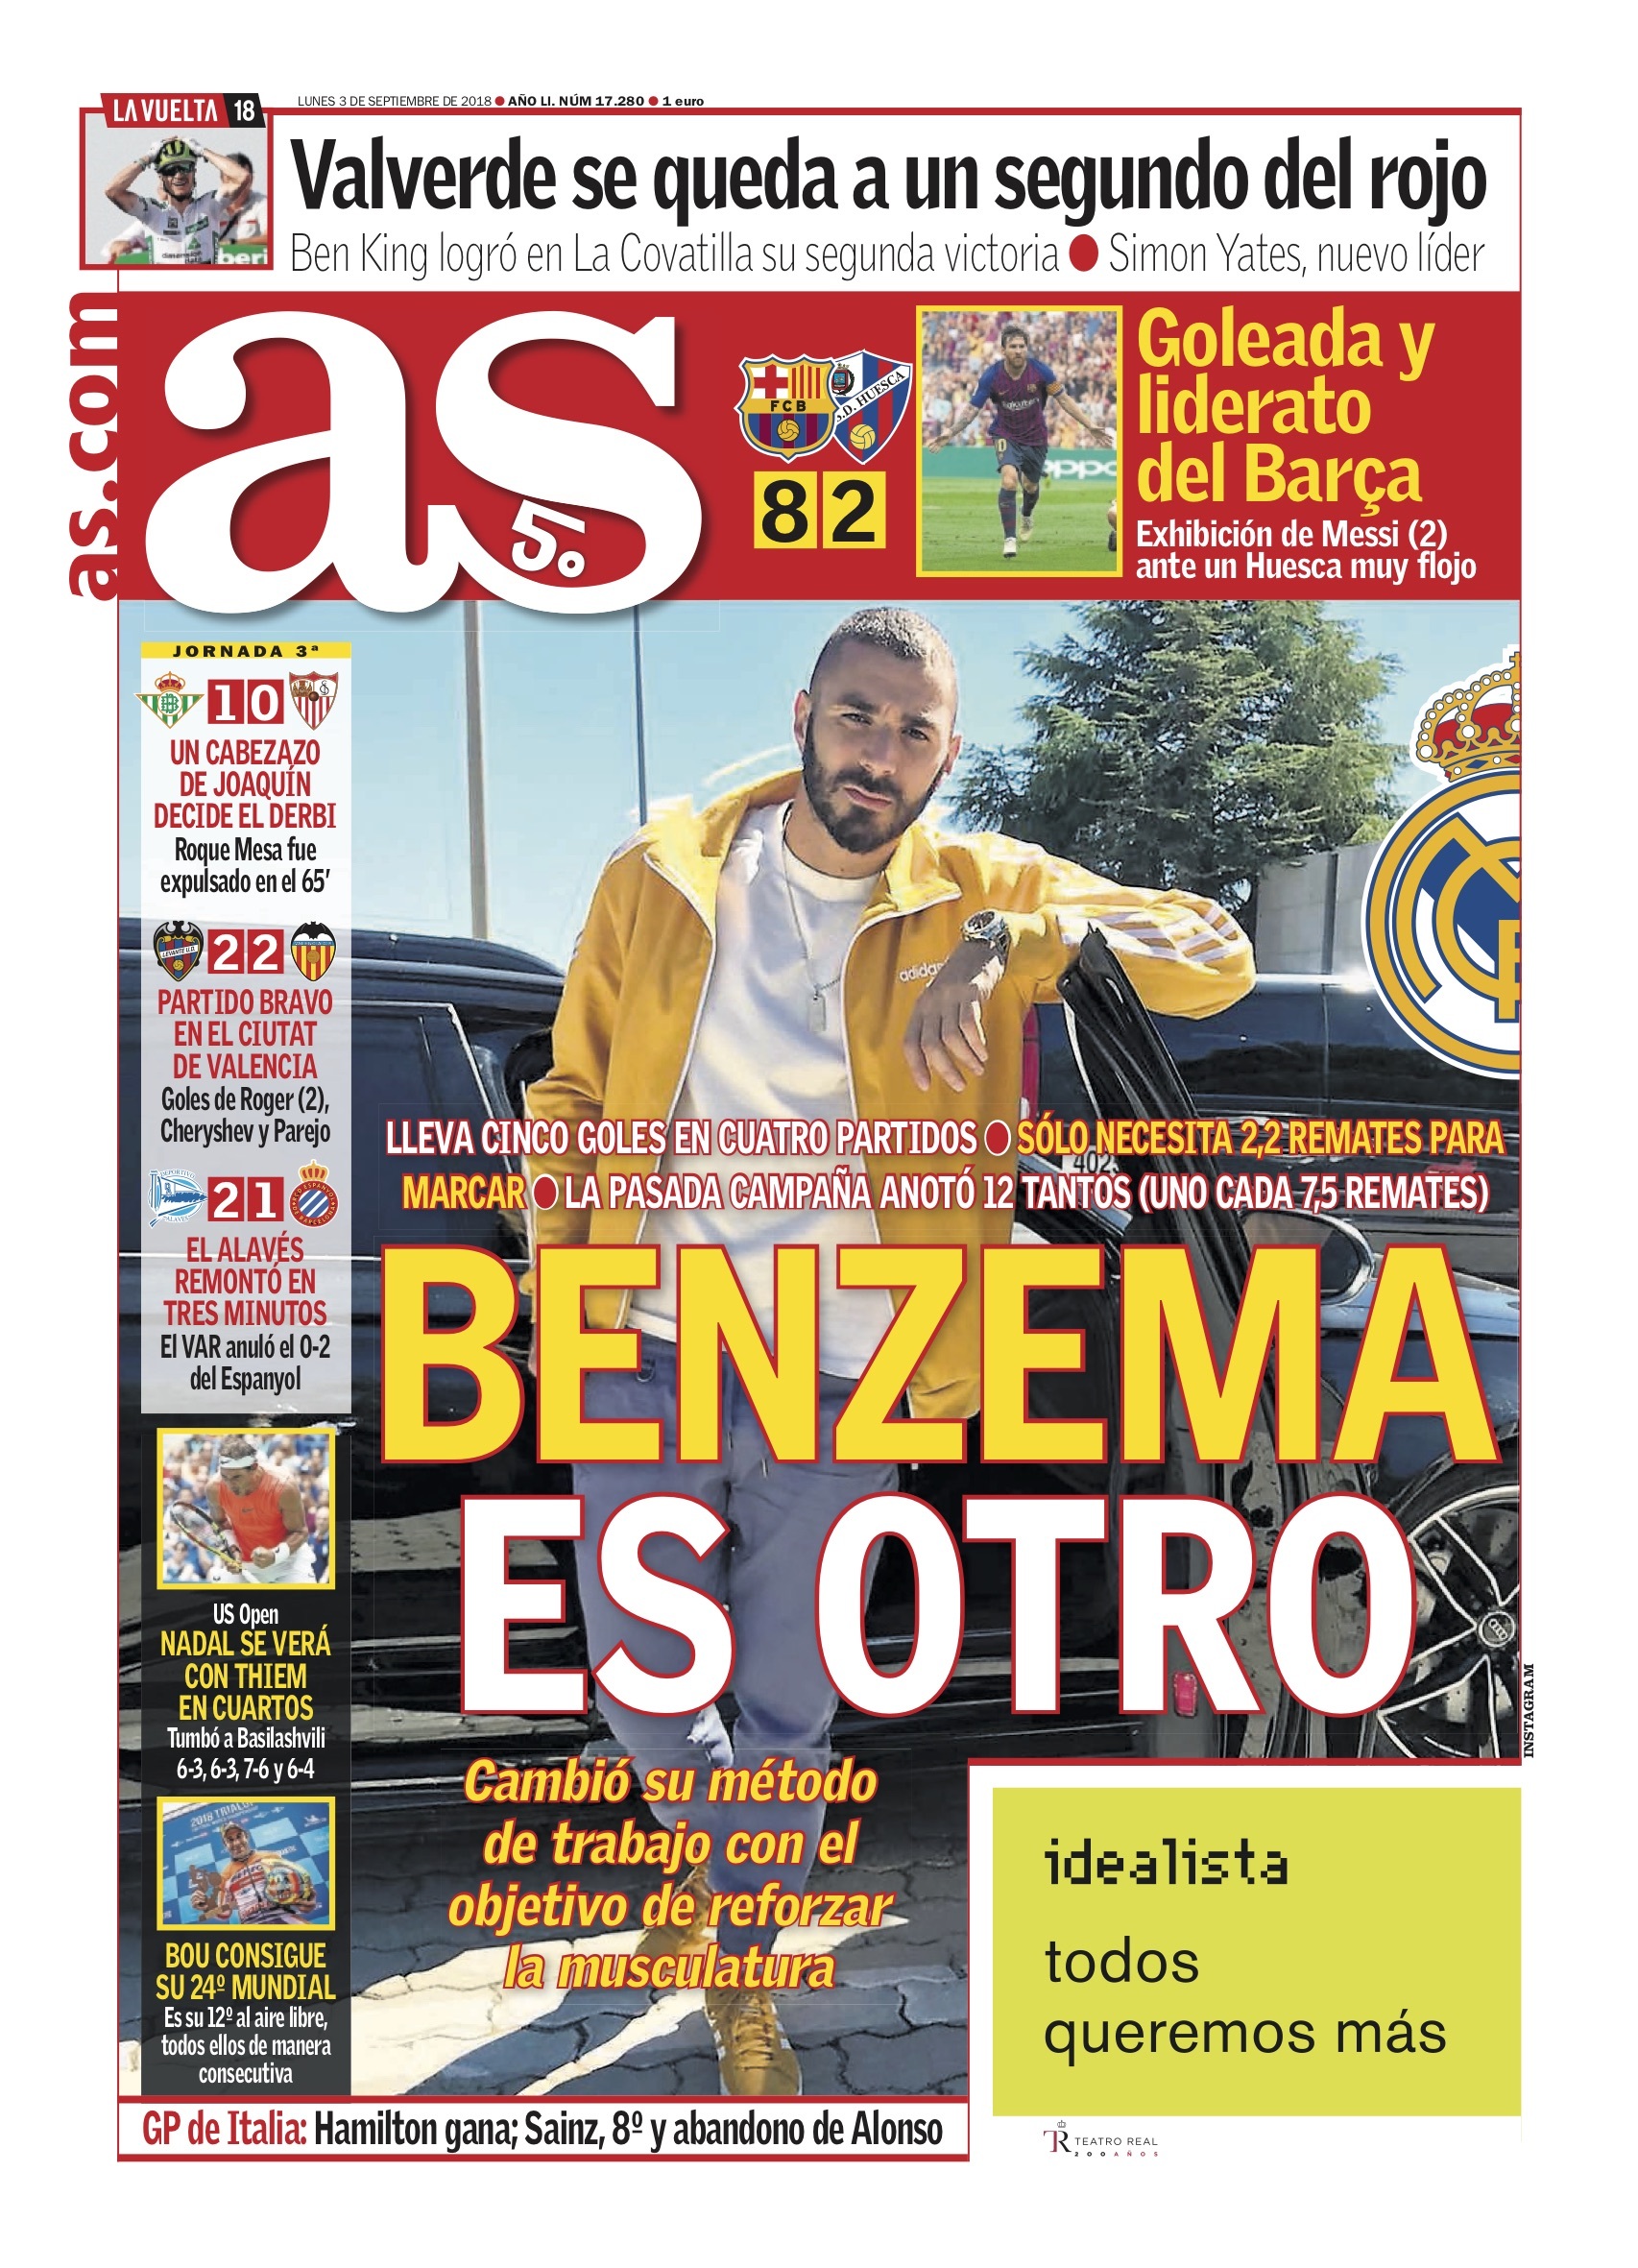 La portada del diario AS (03/09/2018)1706 x 2362